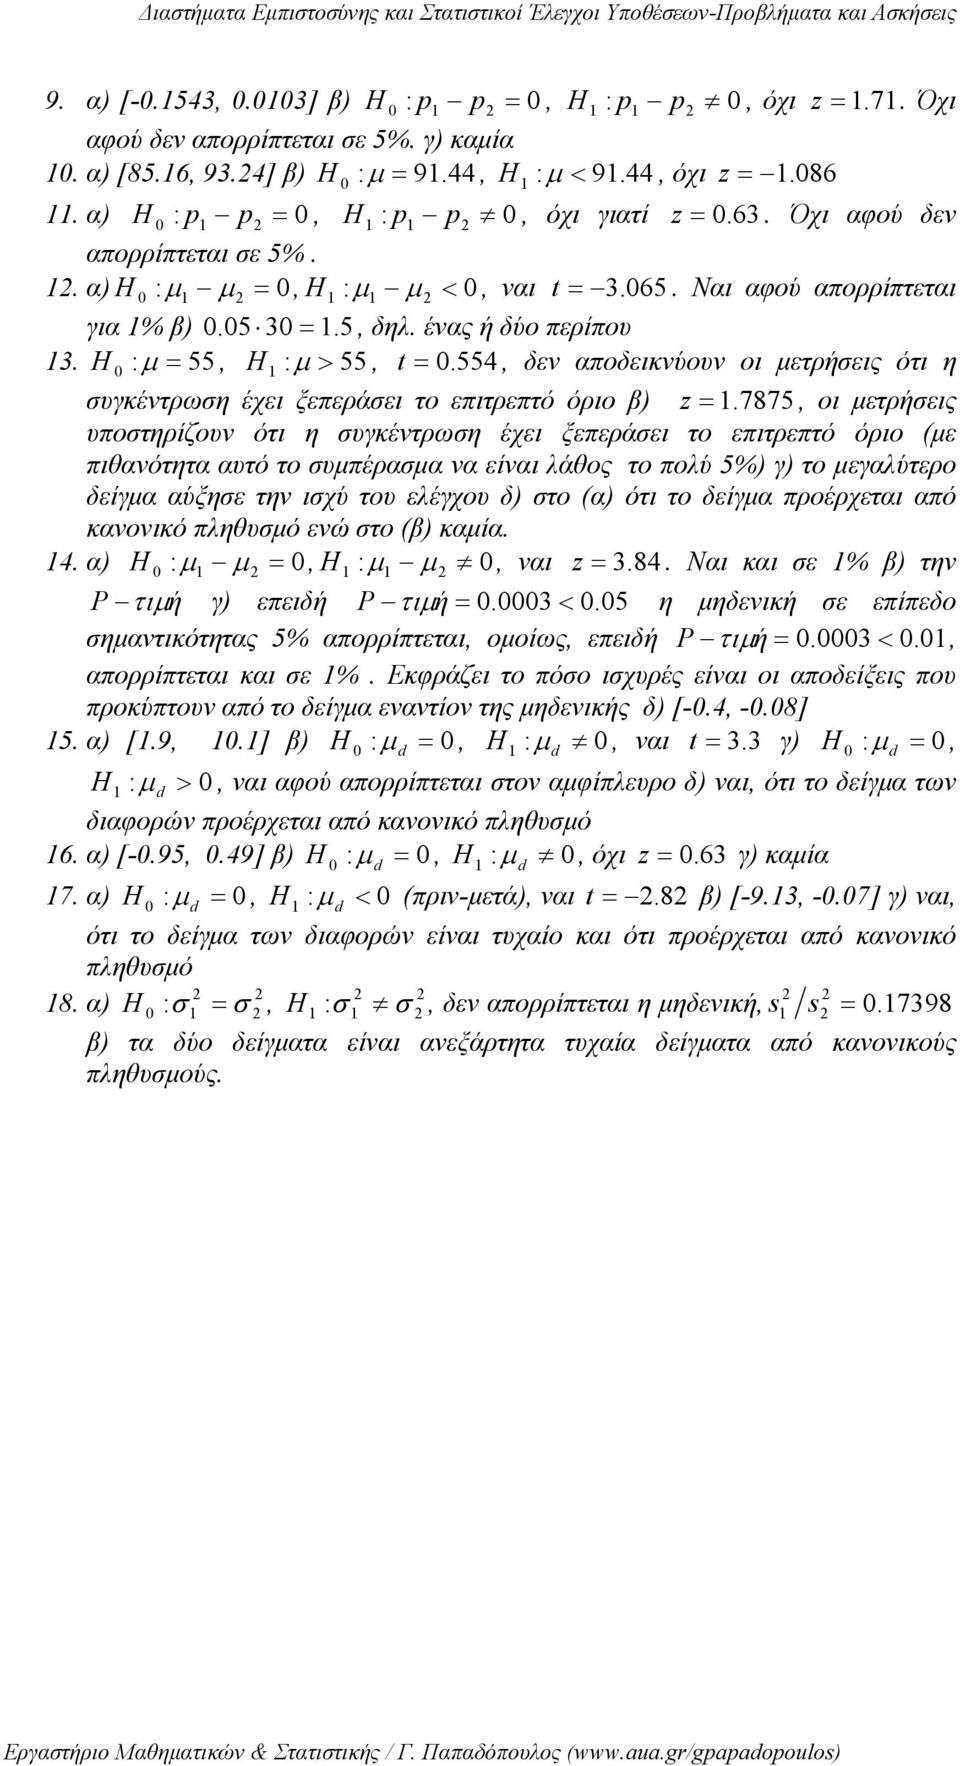 554, δεν αποδεικνύουν οι μετρήσεις ότι η συγκέντρωση έχει ξεπεράσει το επιτρεπτό όριο β) z =.